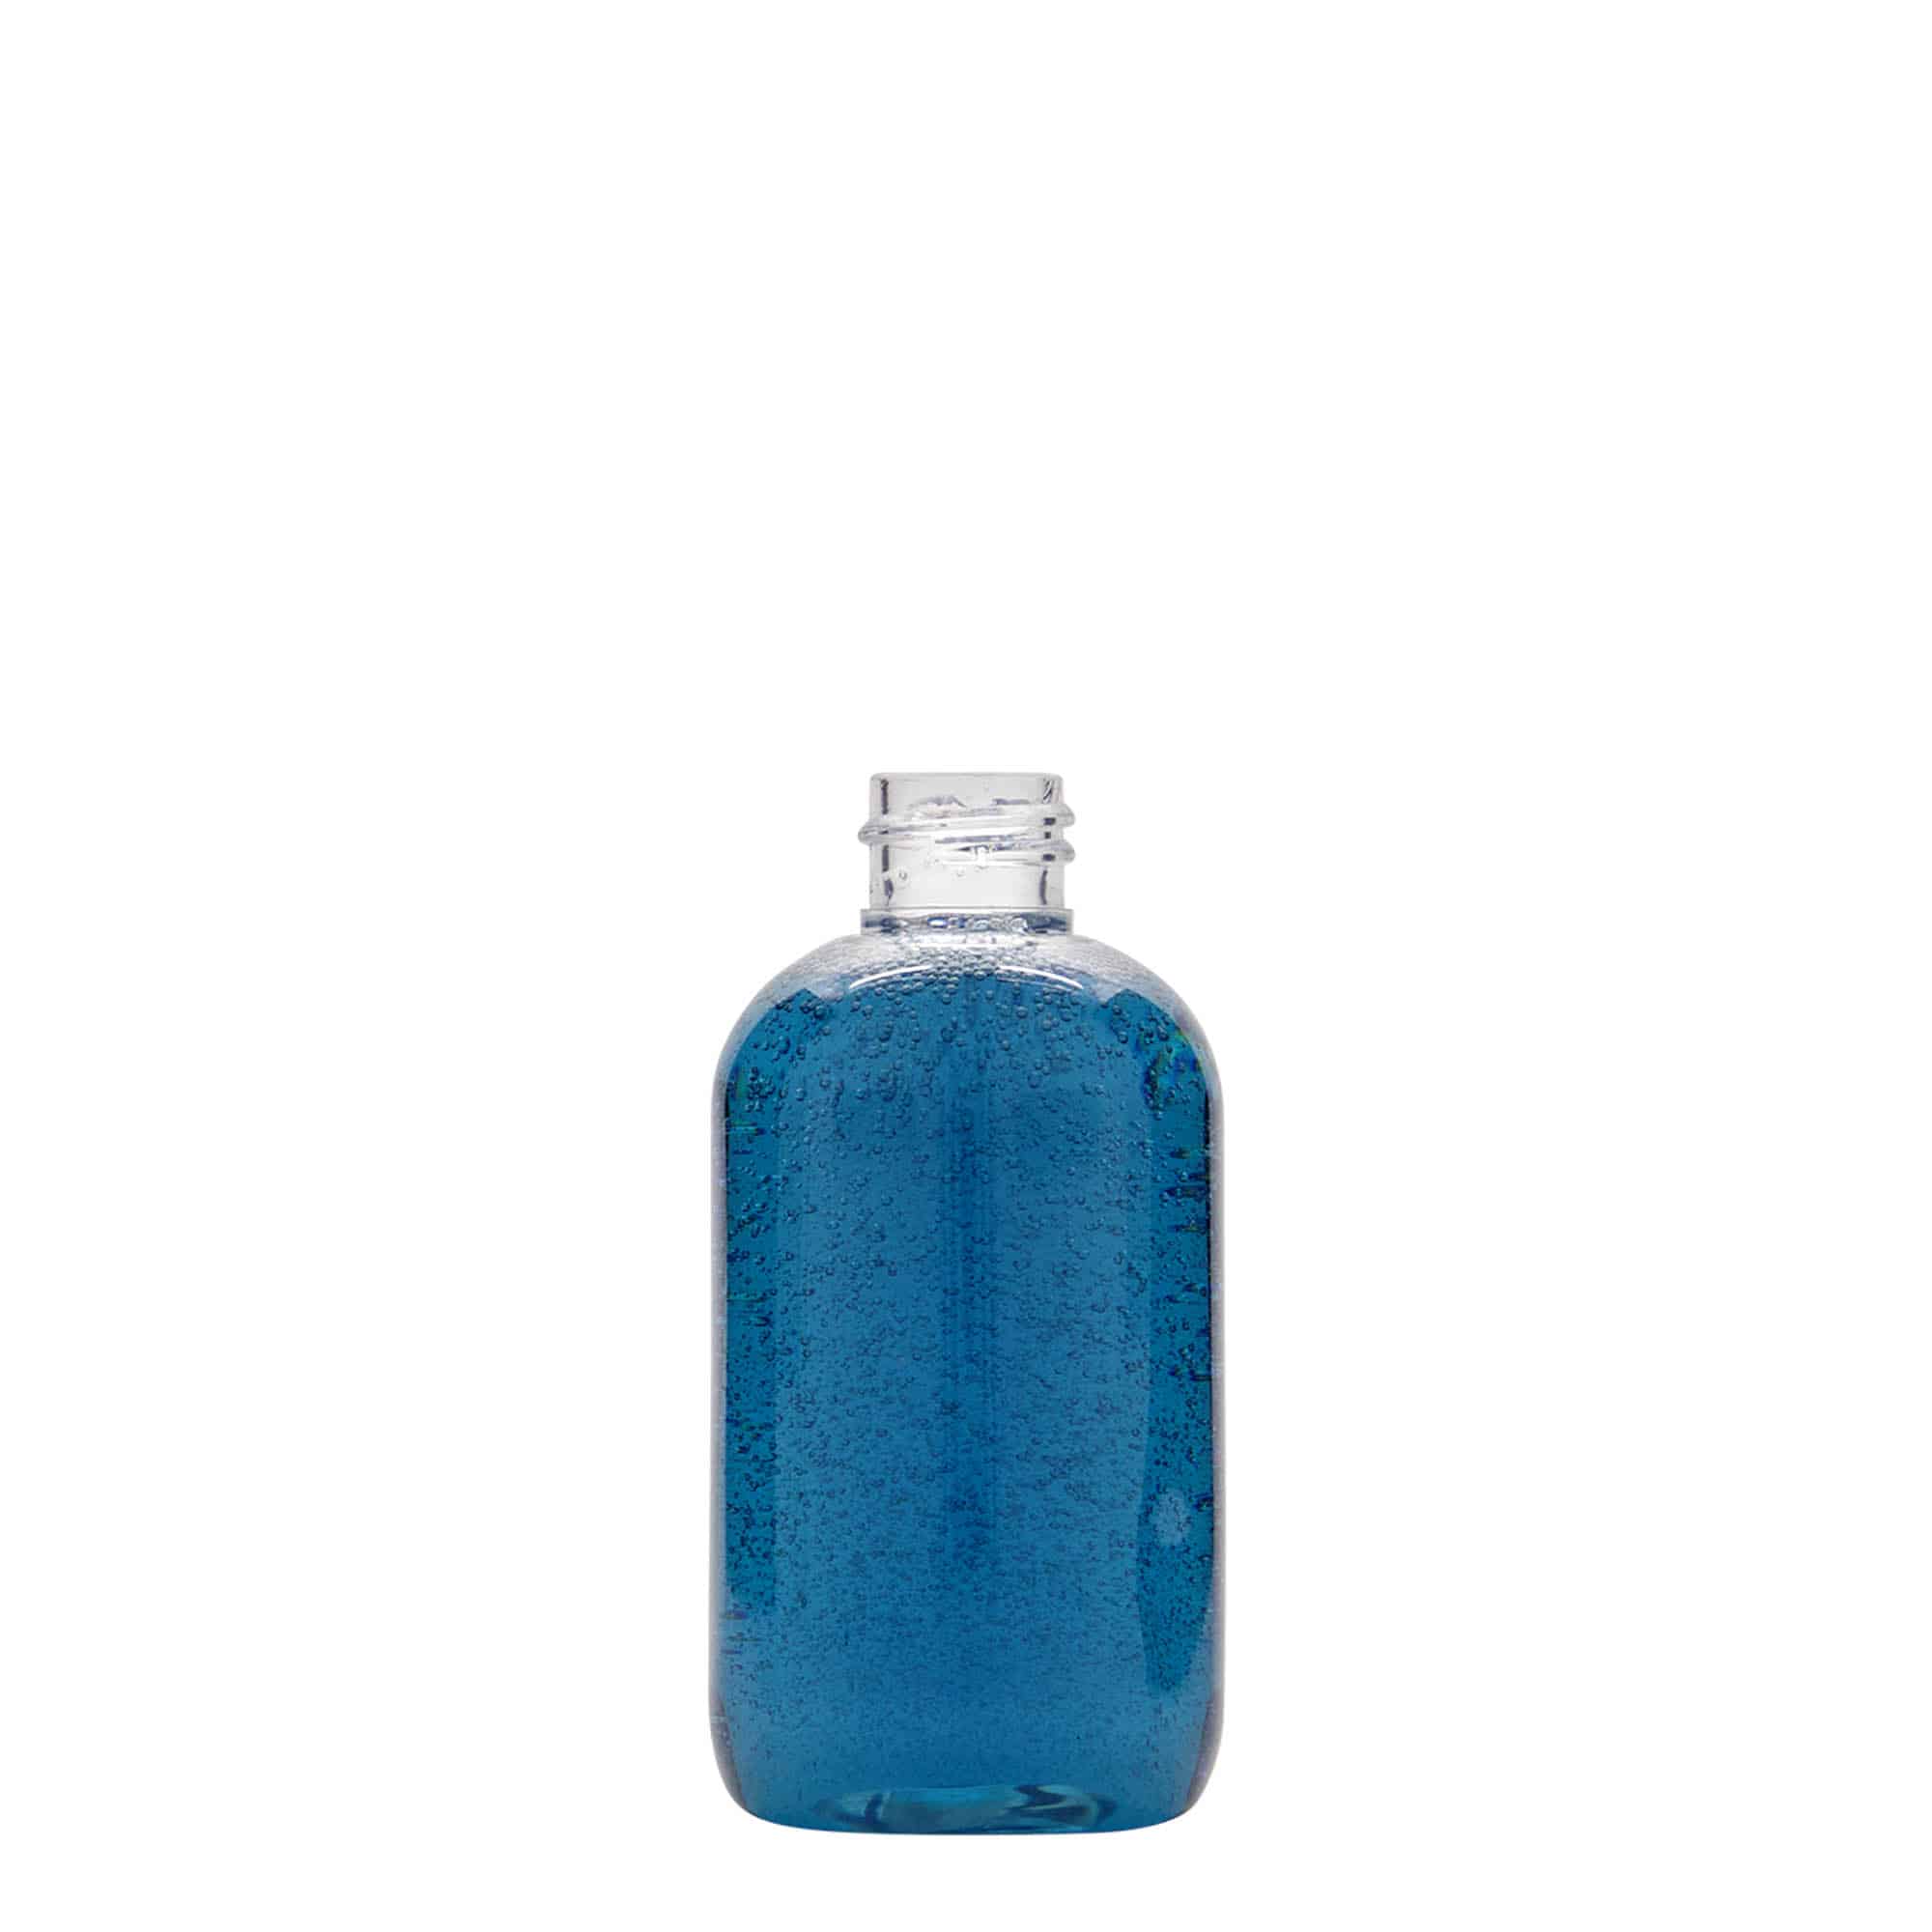 PET lahev 100 ml 'Boston', plast, ústí: GPI 20/410